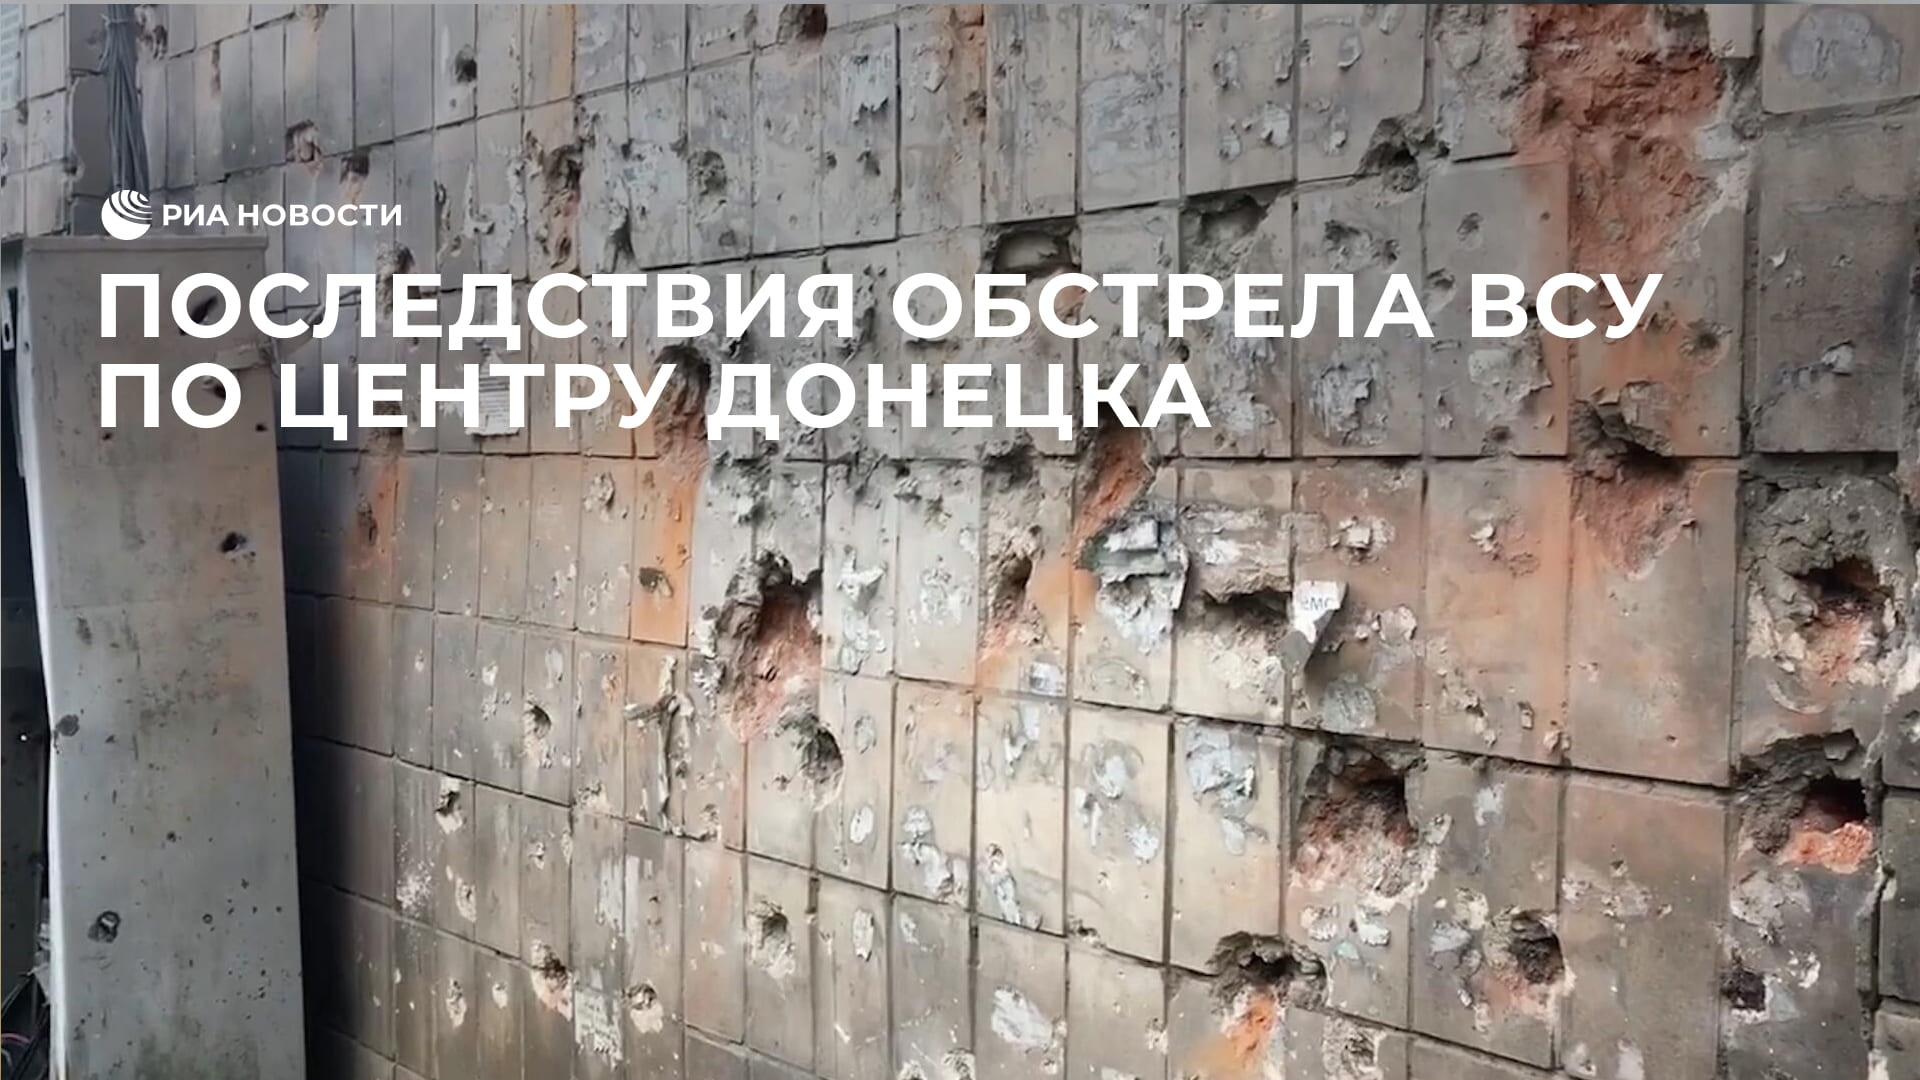 Последствия обстрела ВСУ по центру Донецка